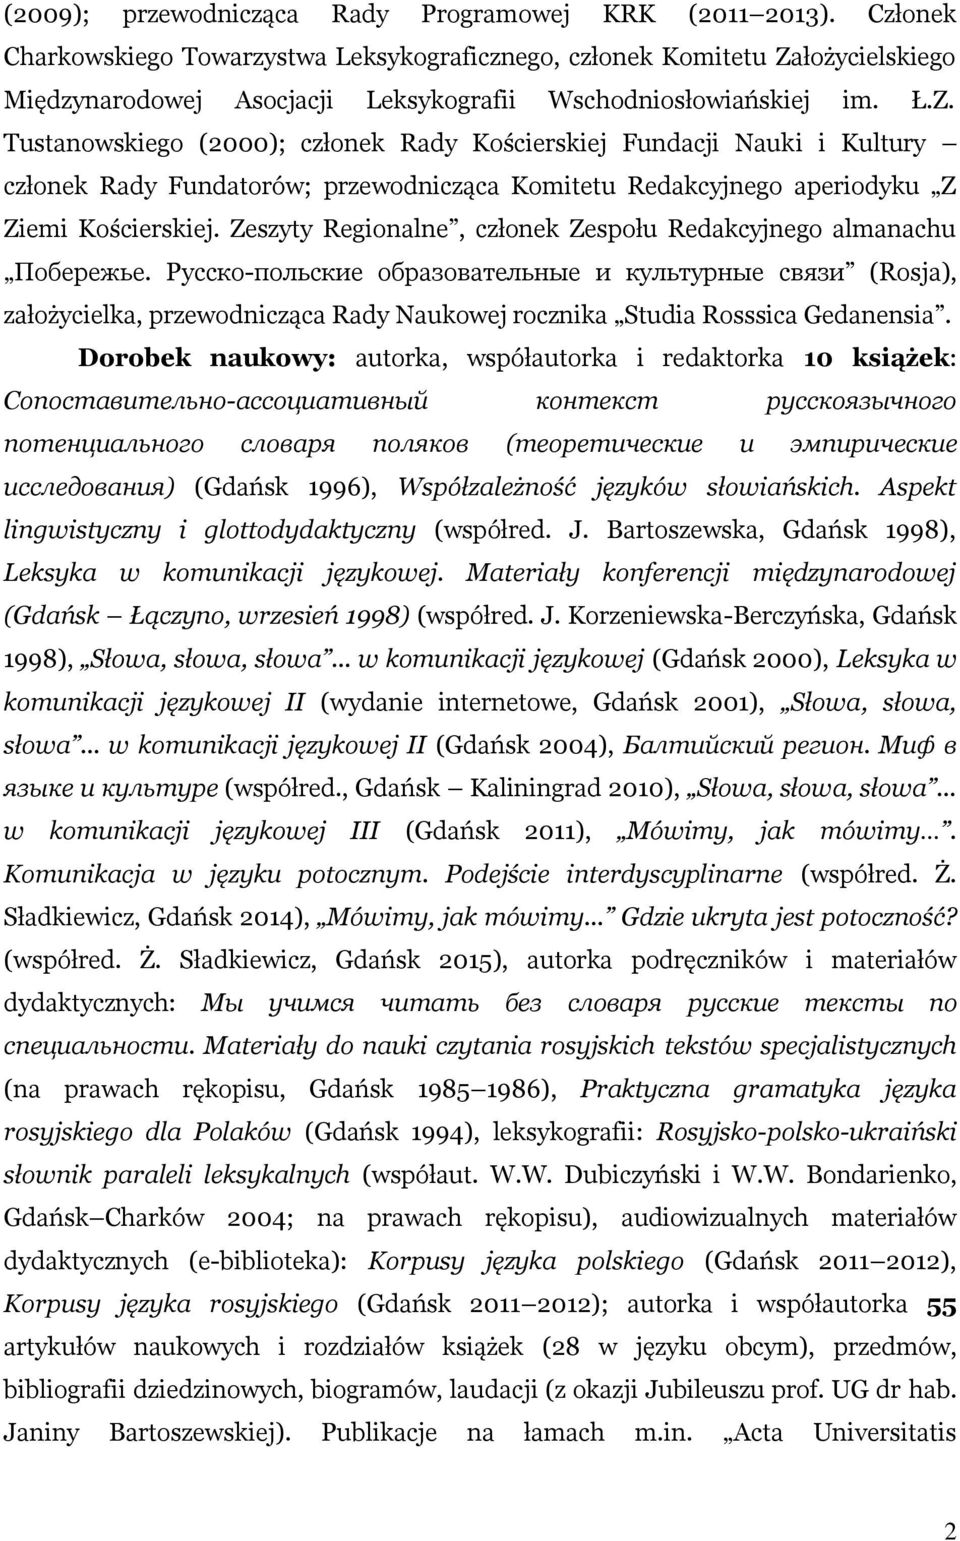 łożycielskiego Międzynarodowej Asocjacji Leksykografii Wschodniosłowiańskiej im. Ł.Z.